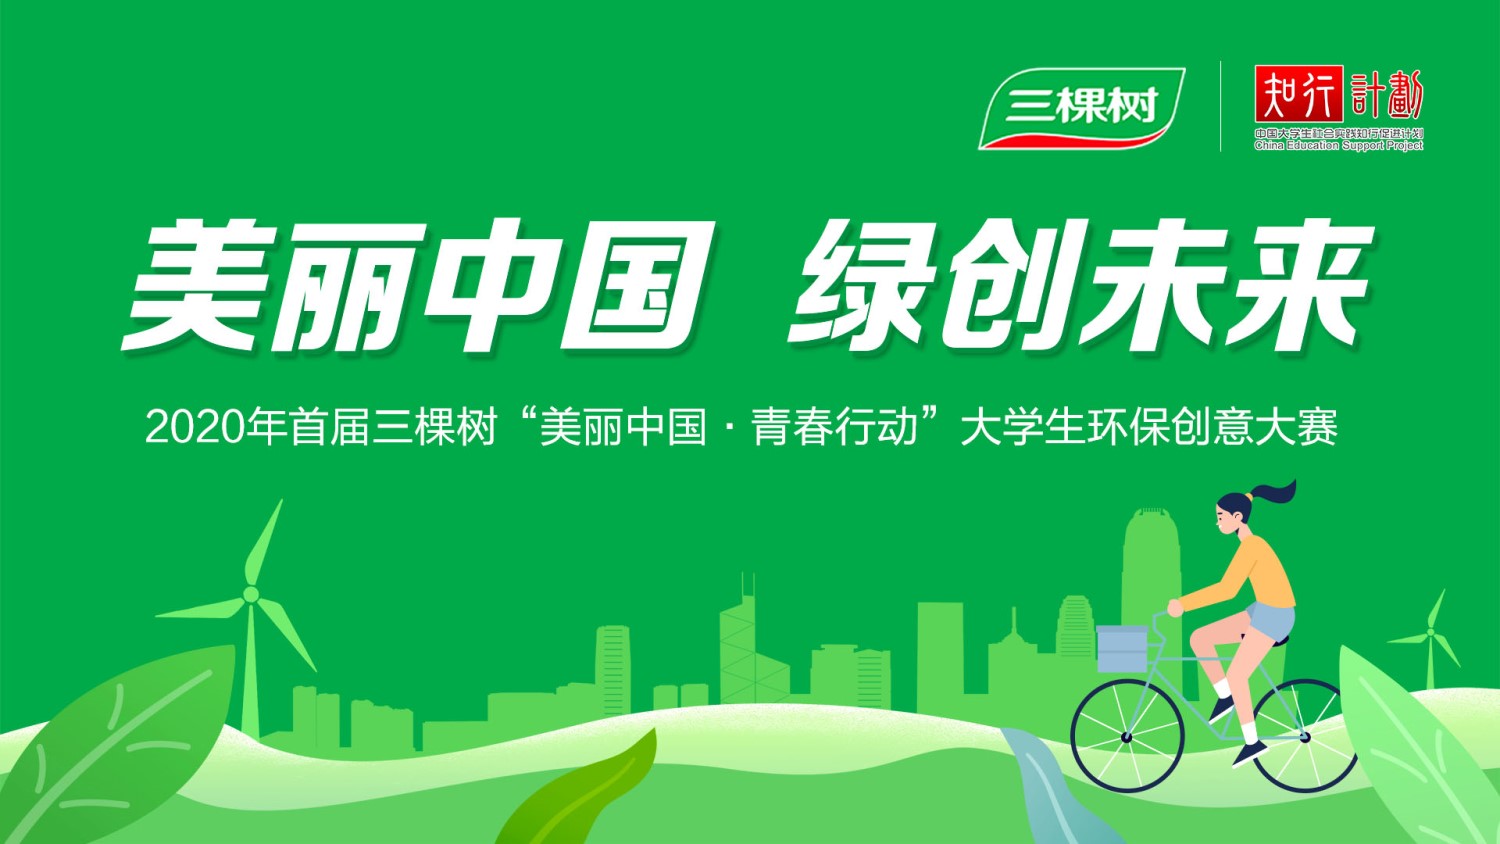 2020年首届三棵树”美丽中国“大学生环保创意大赛海报-最新.jpg